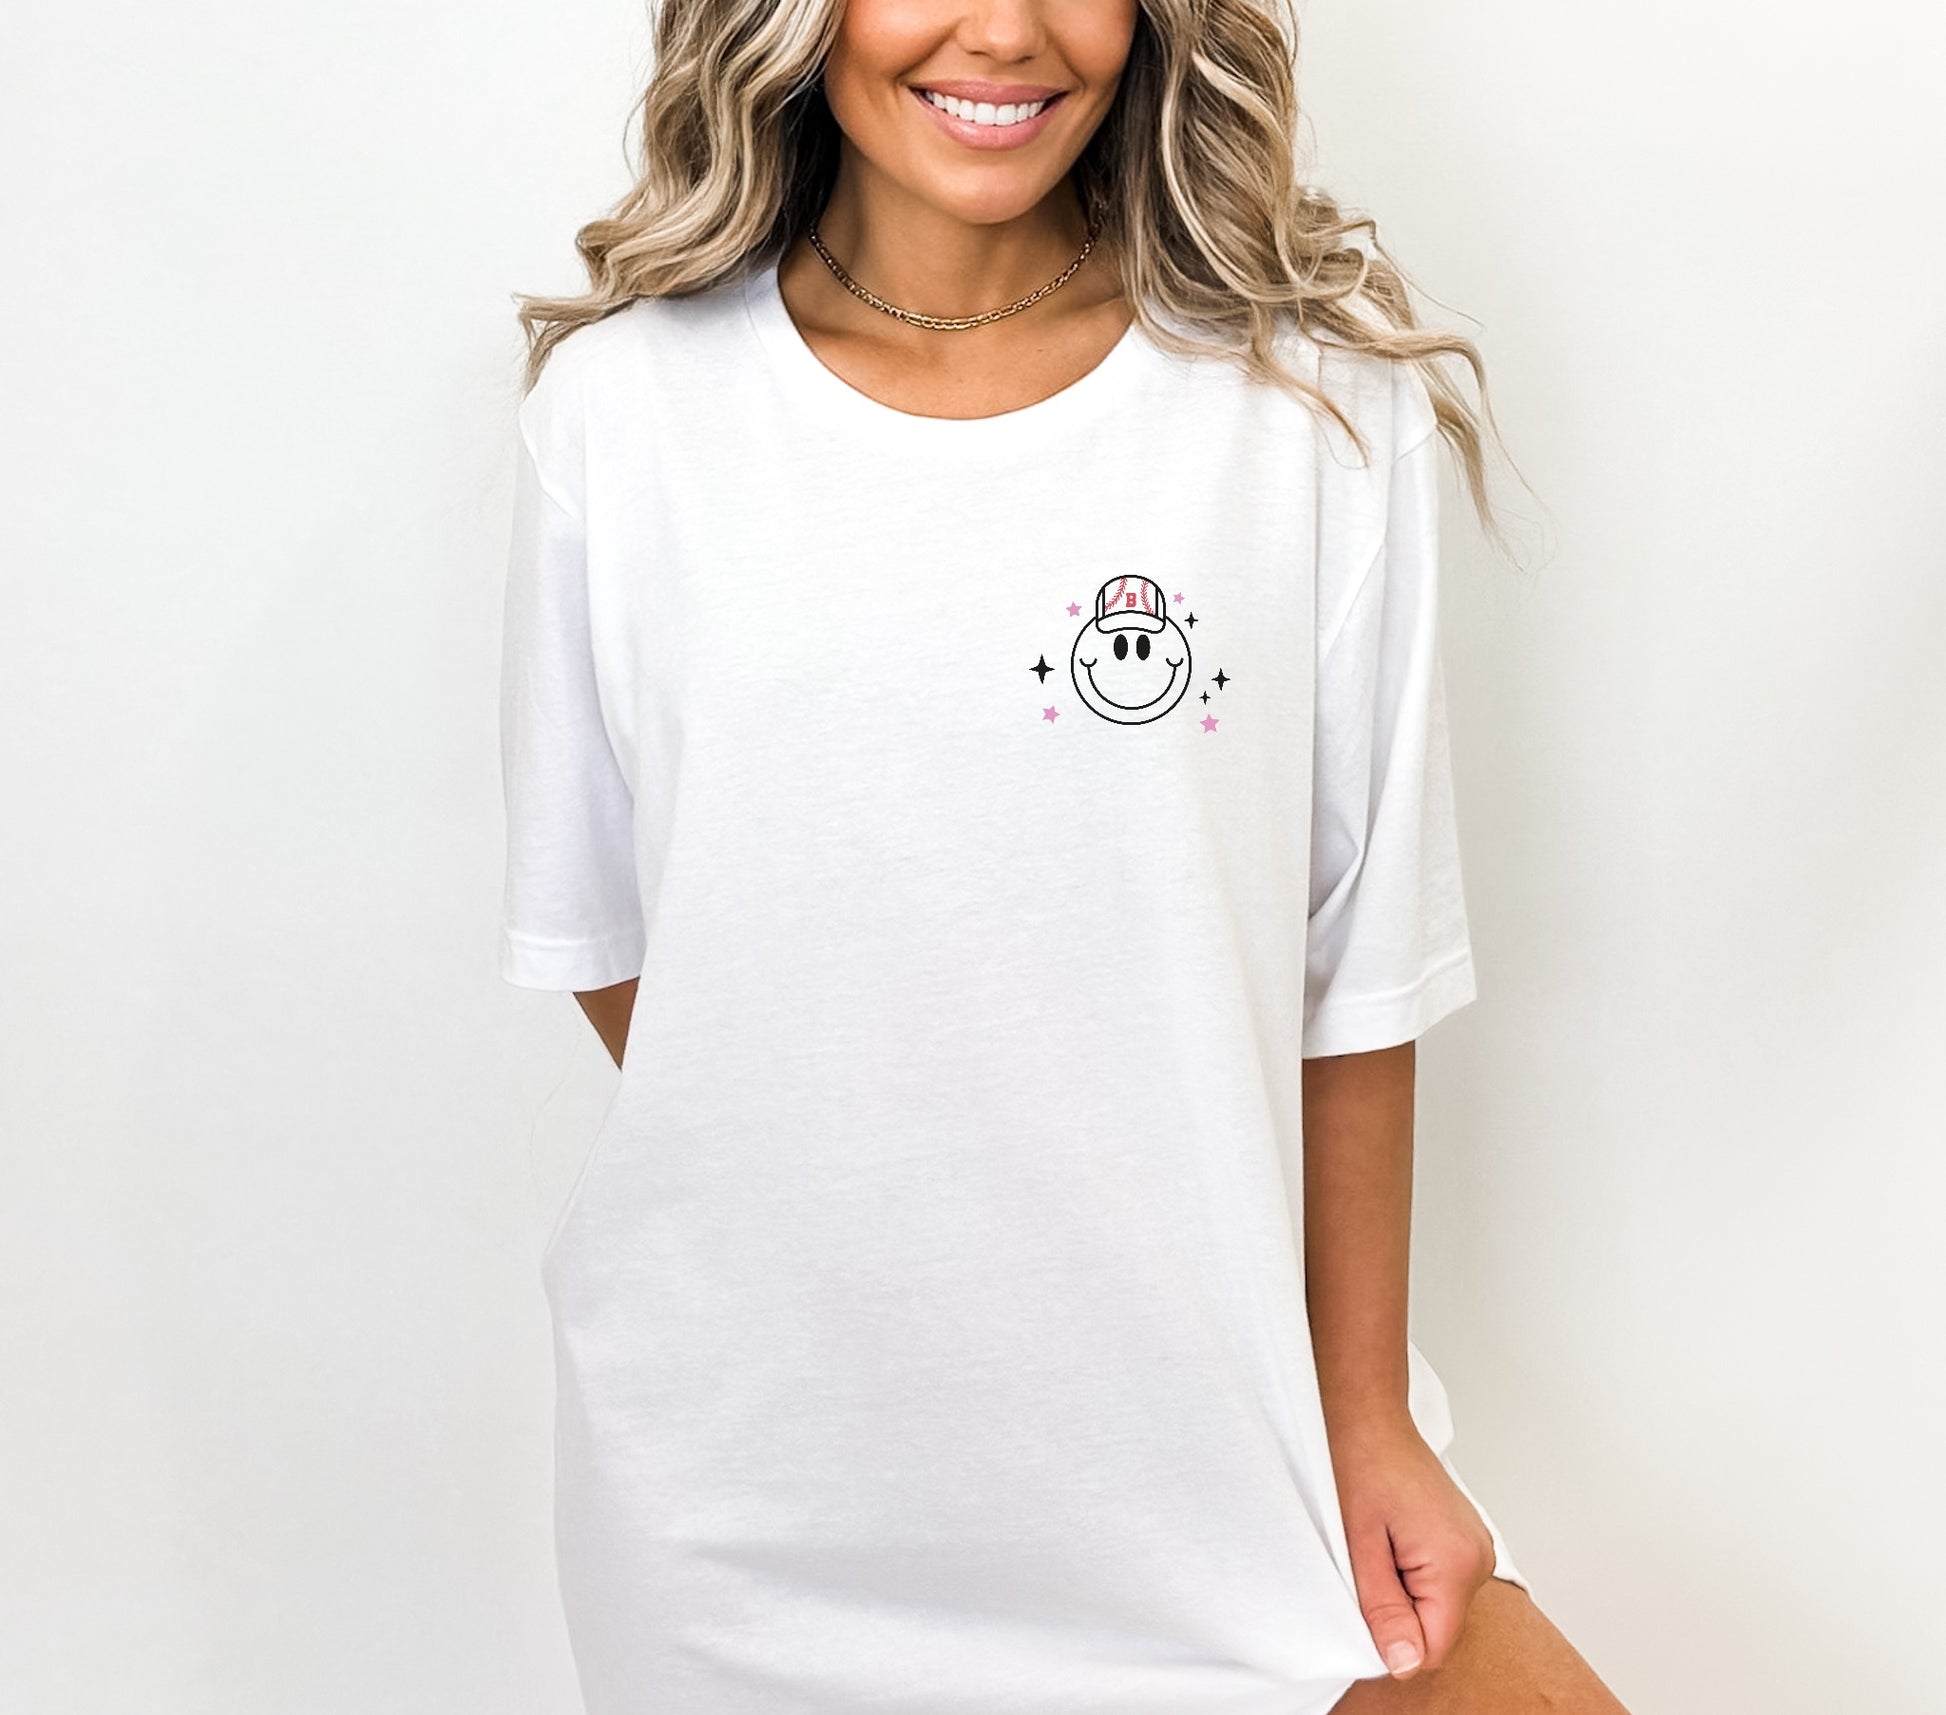 Wallen 98 Braves T-Shirt, Sweatshirt or Hoodie – C+C Boutique L L C